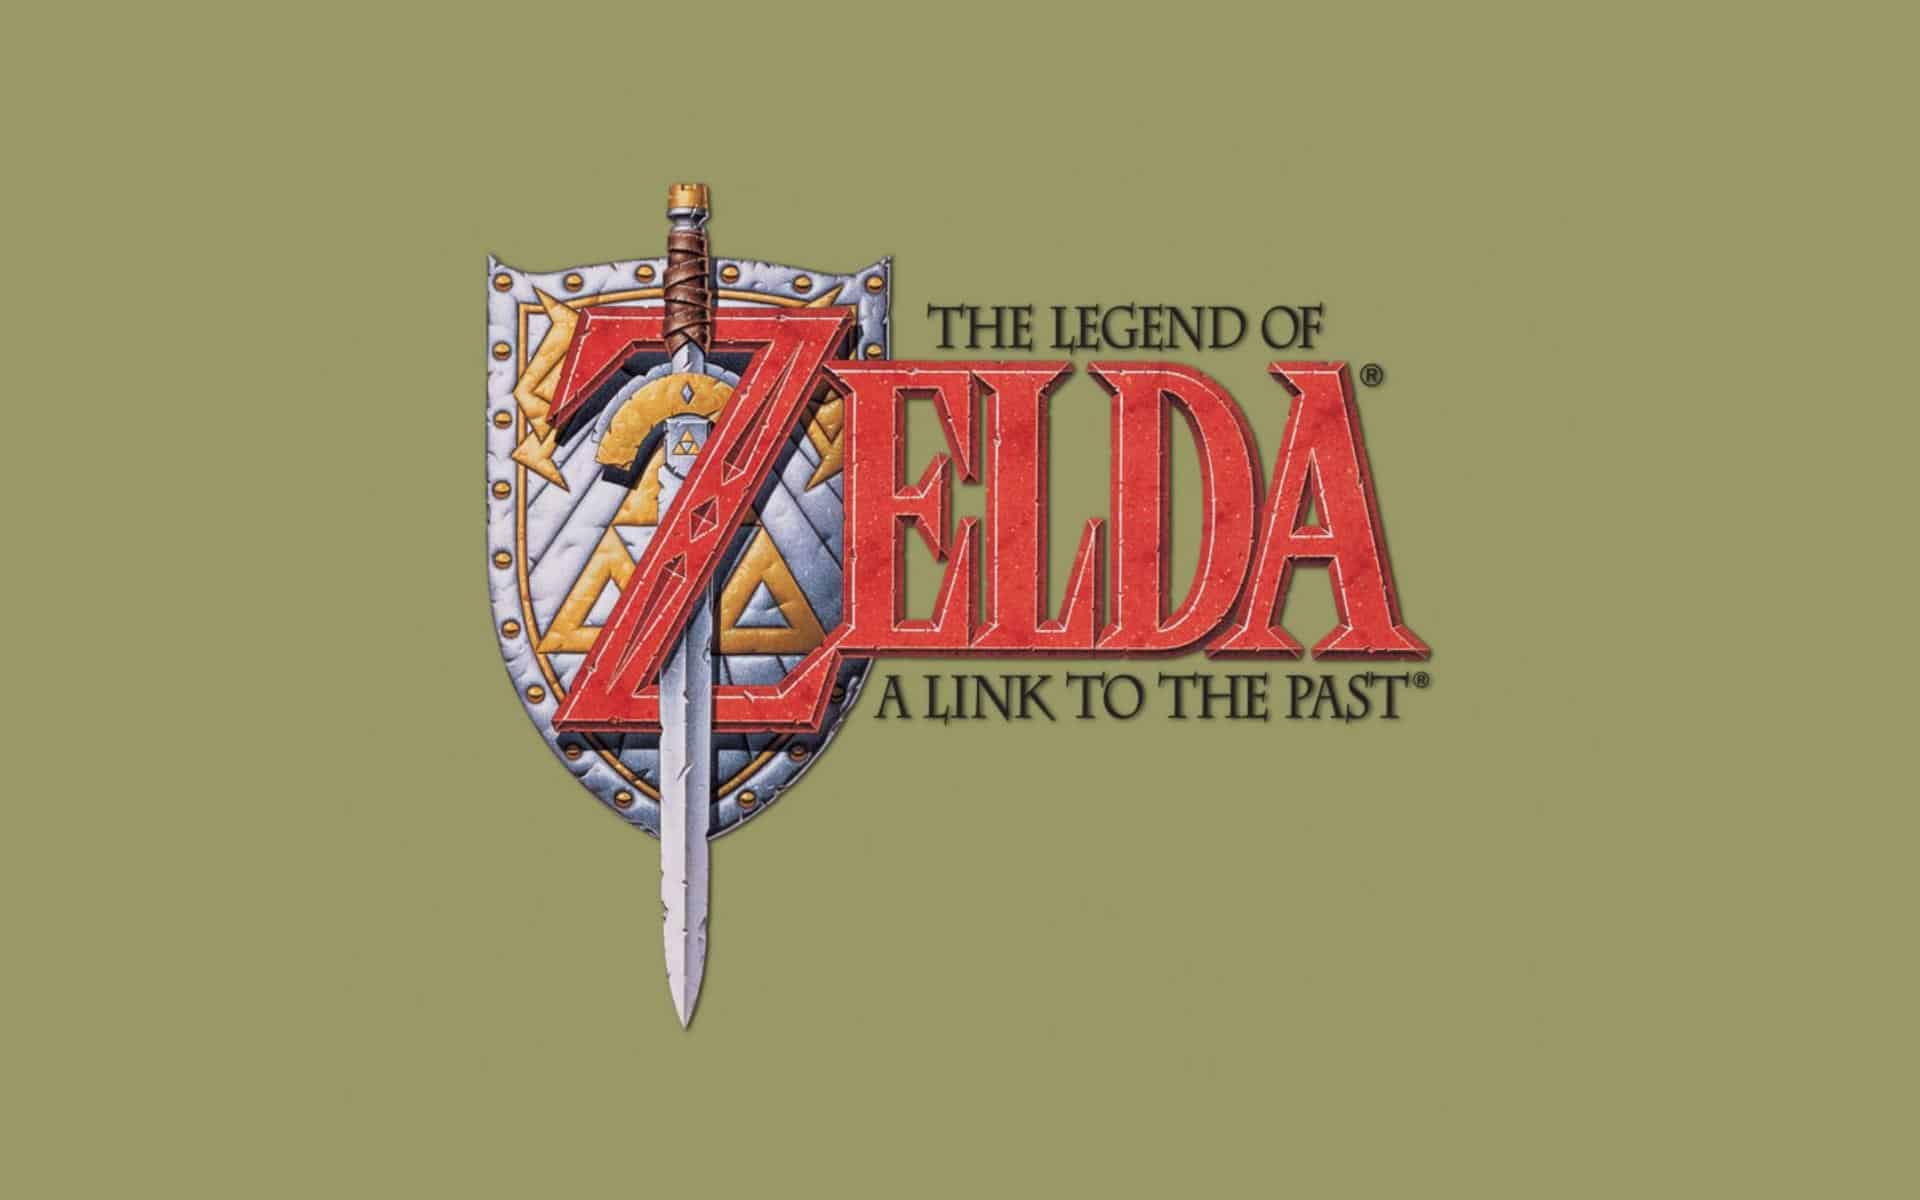 Best Zelda Games - The Legend of Zelda - A Link to the Past